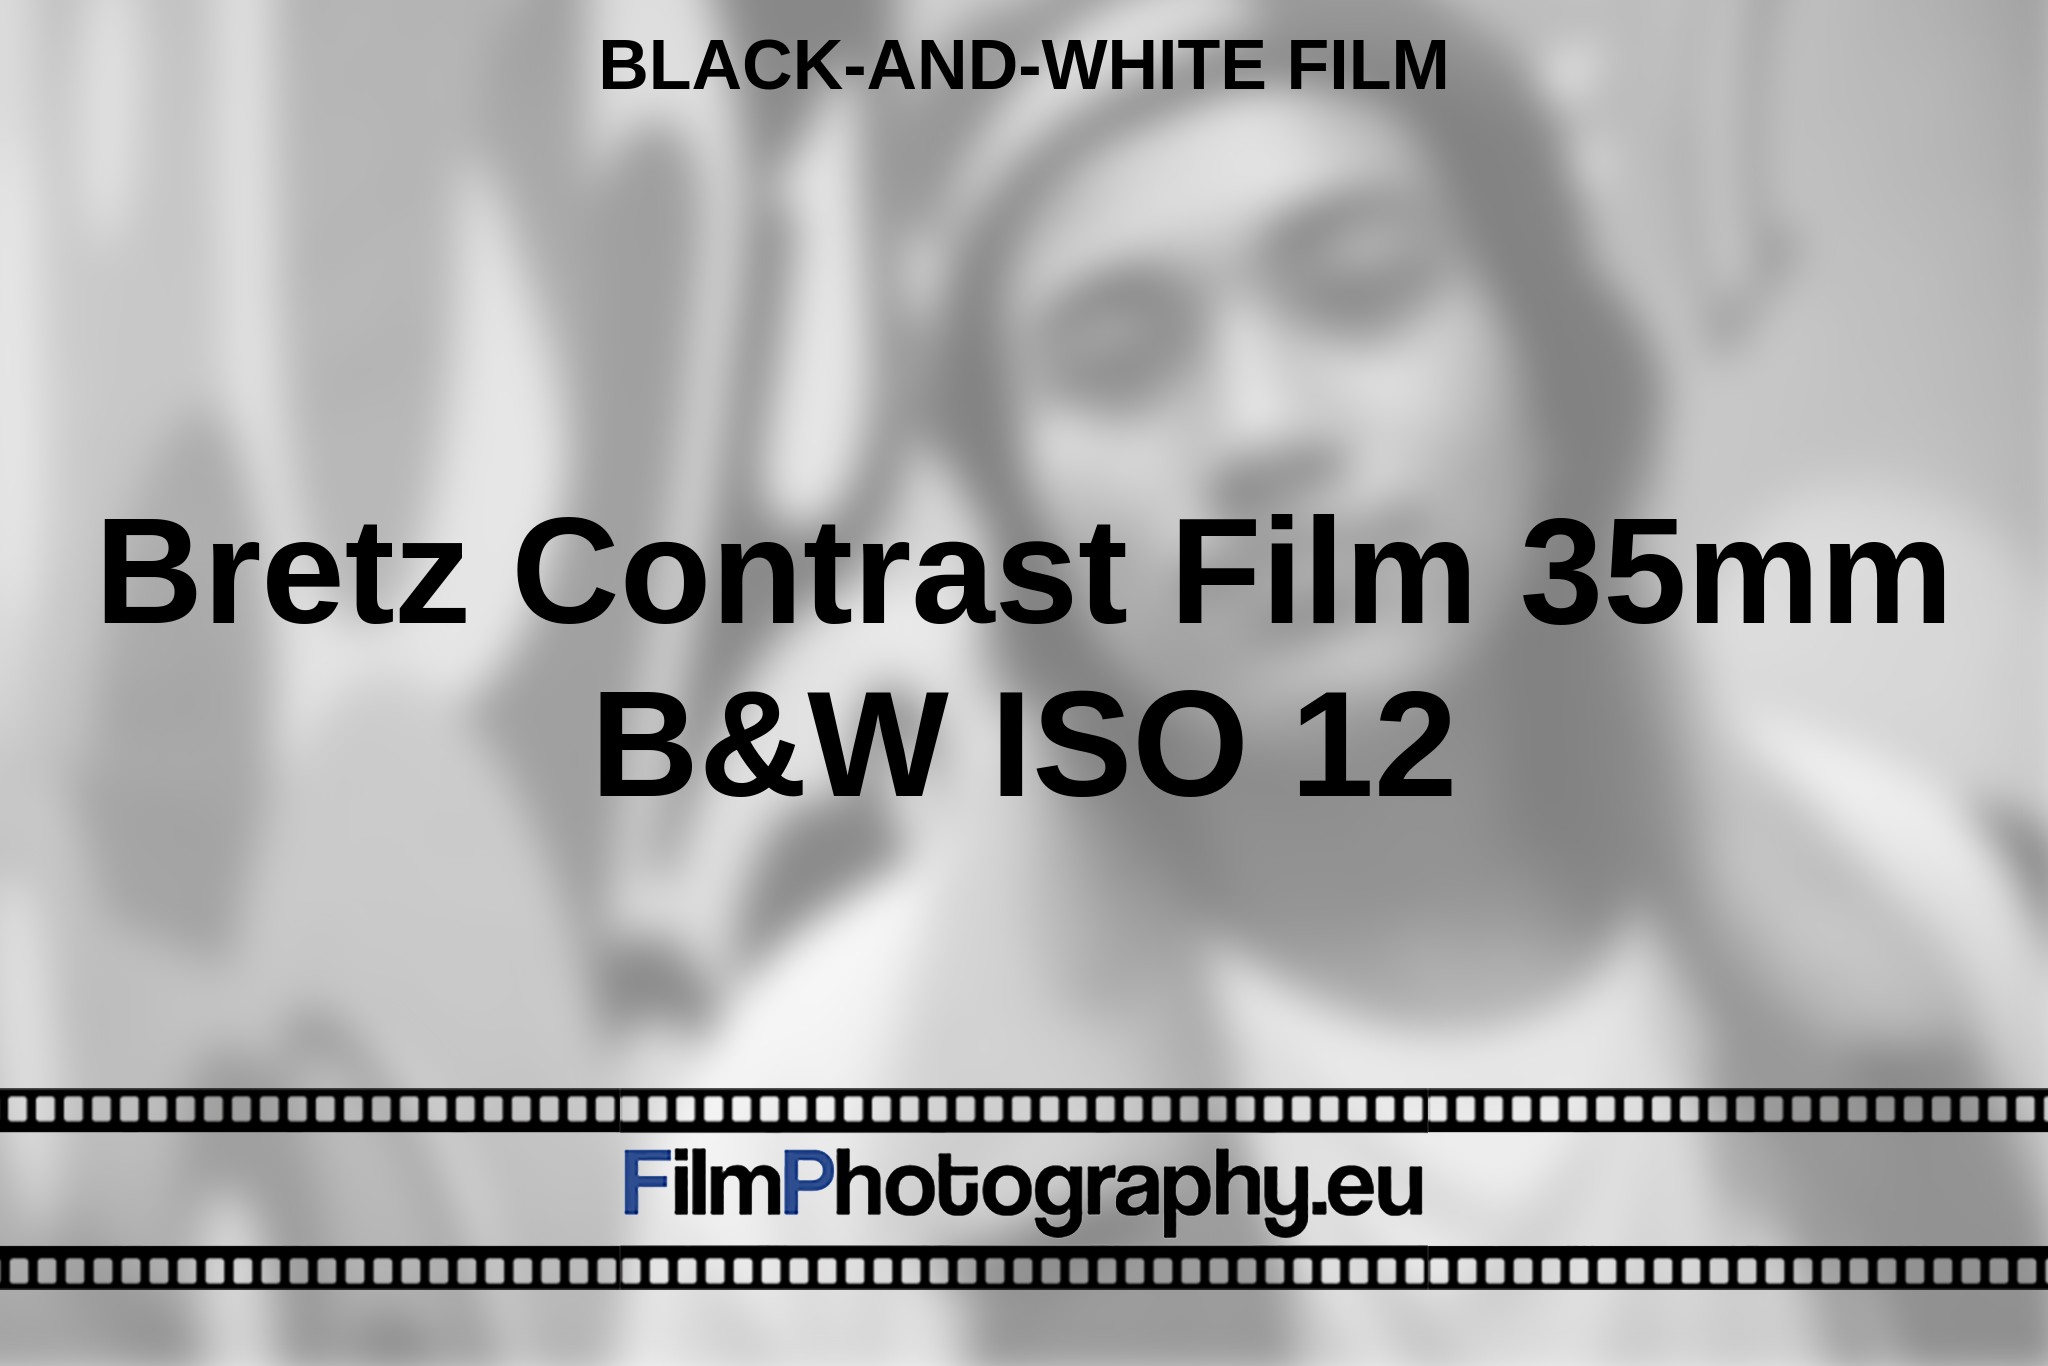 bretz-contrast-film-35mm-b-w-iso-12-black-and-white-film-bnv.jpg